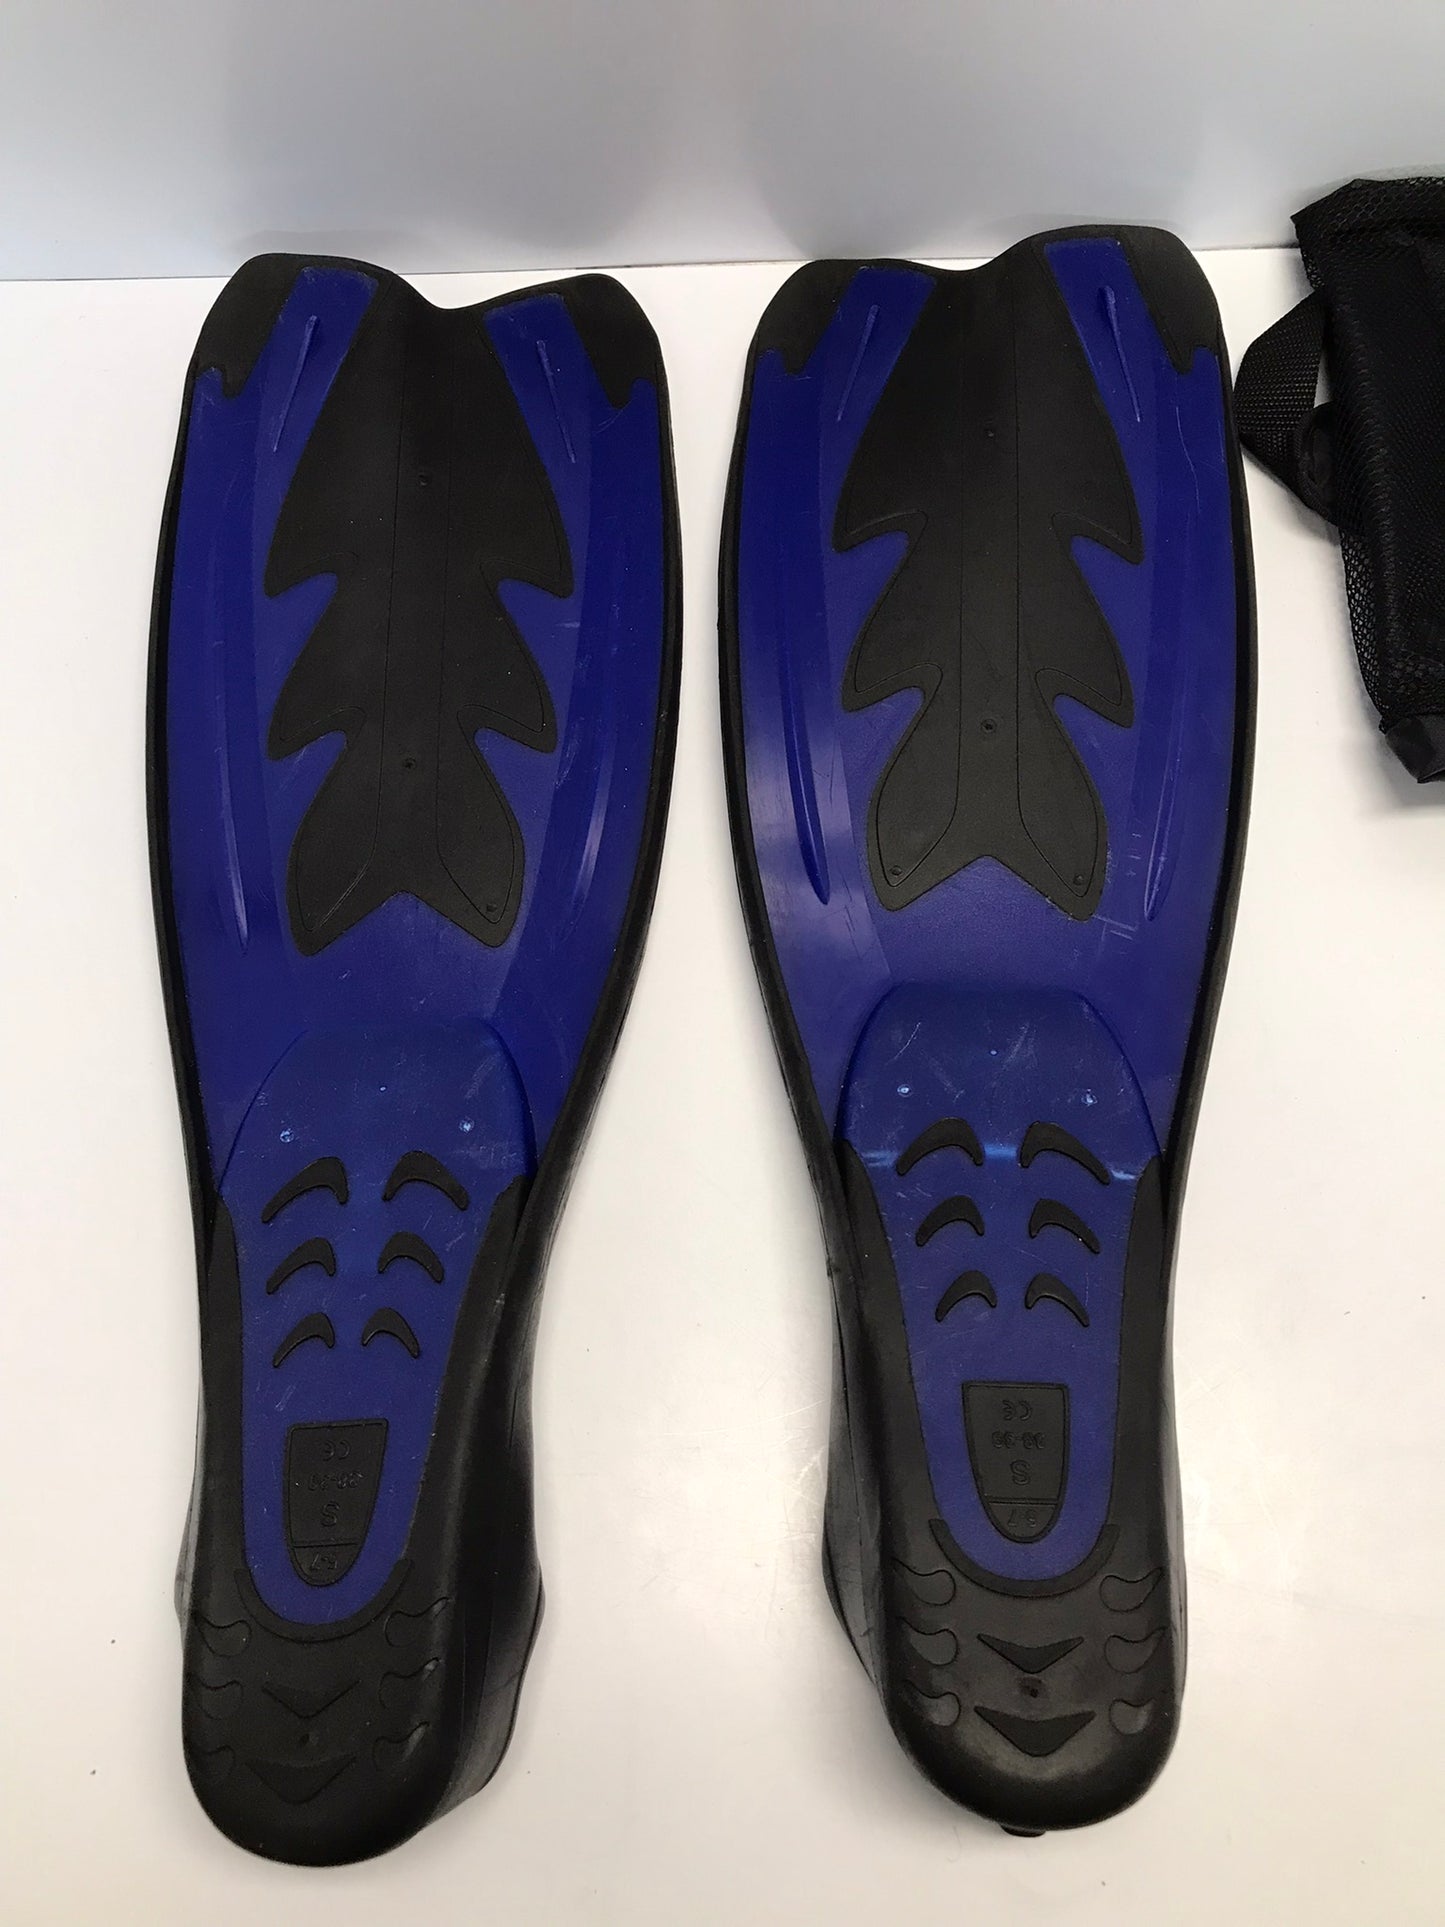 Snorkel Dive Fins Men's Shoe Size 5-7 Scubba Max Blue Black Excellent